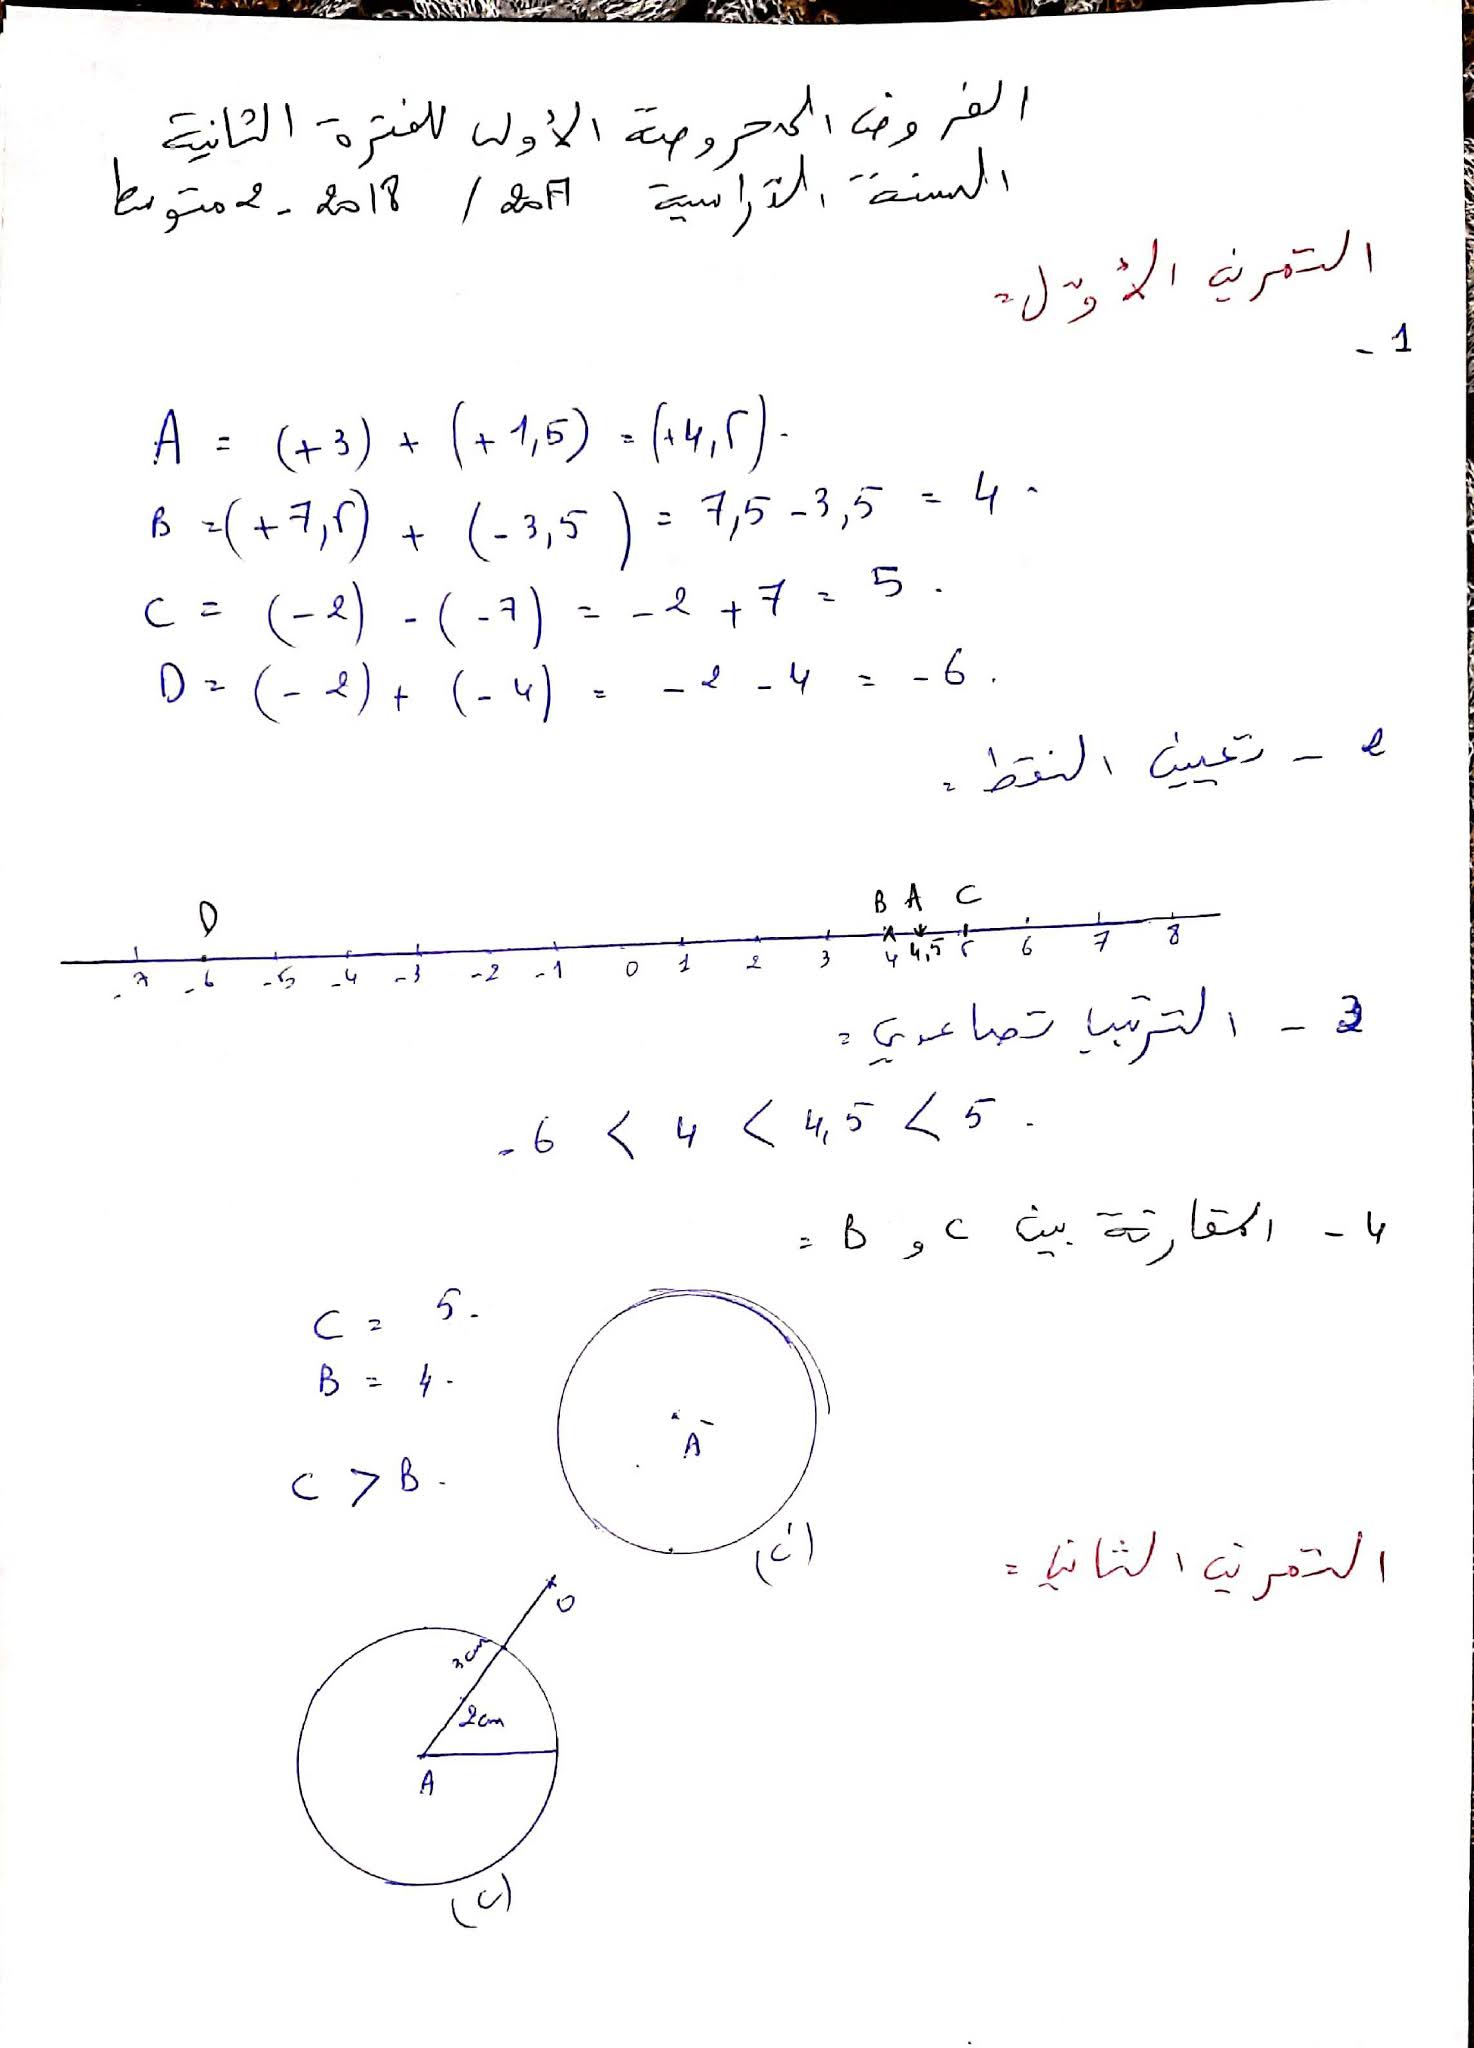 فرض الرياضيات الفصل الثاني للسنة الثانية متوسط - الجيل الثاني نموذج 2